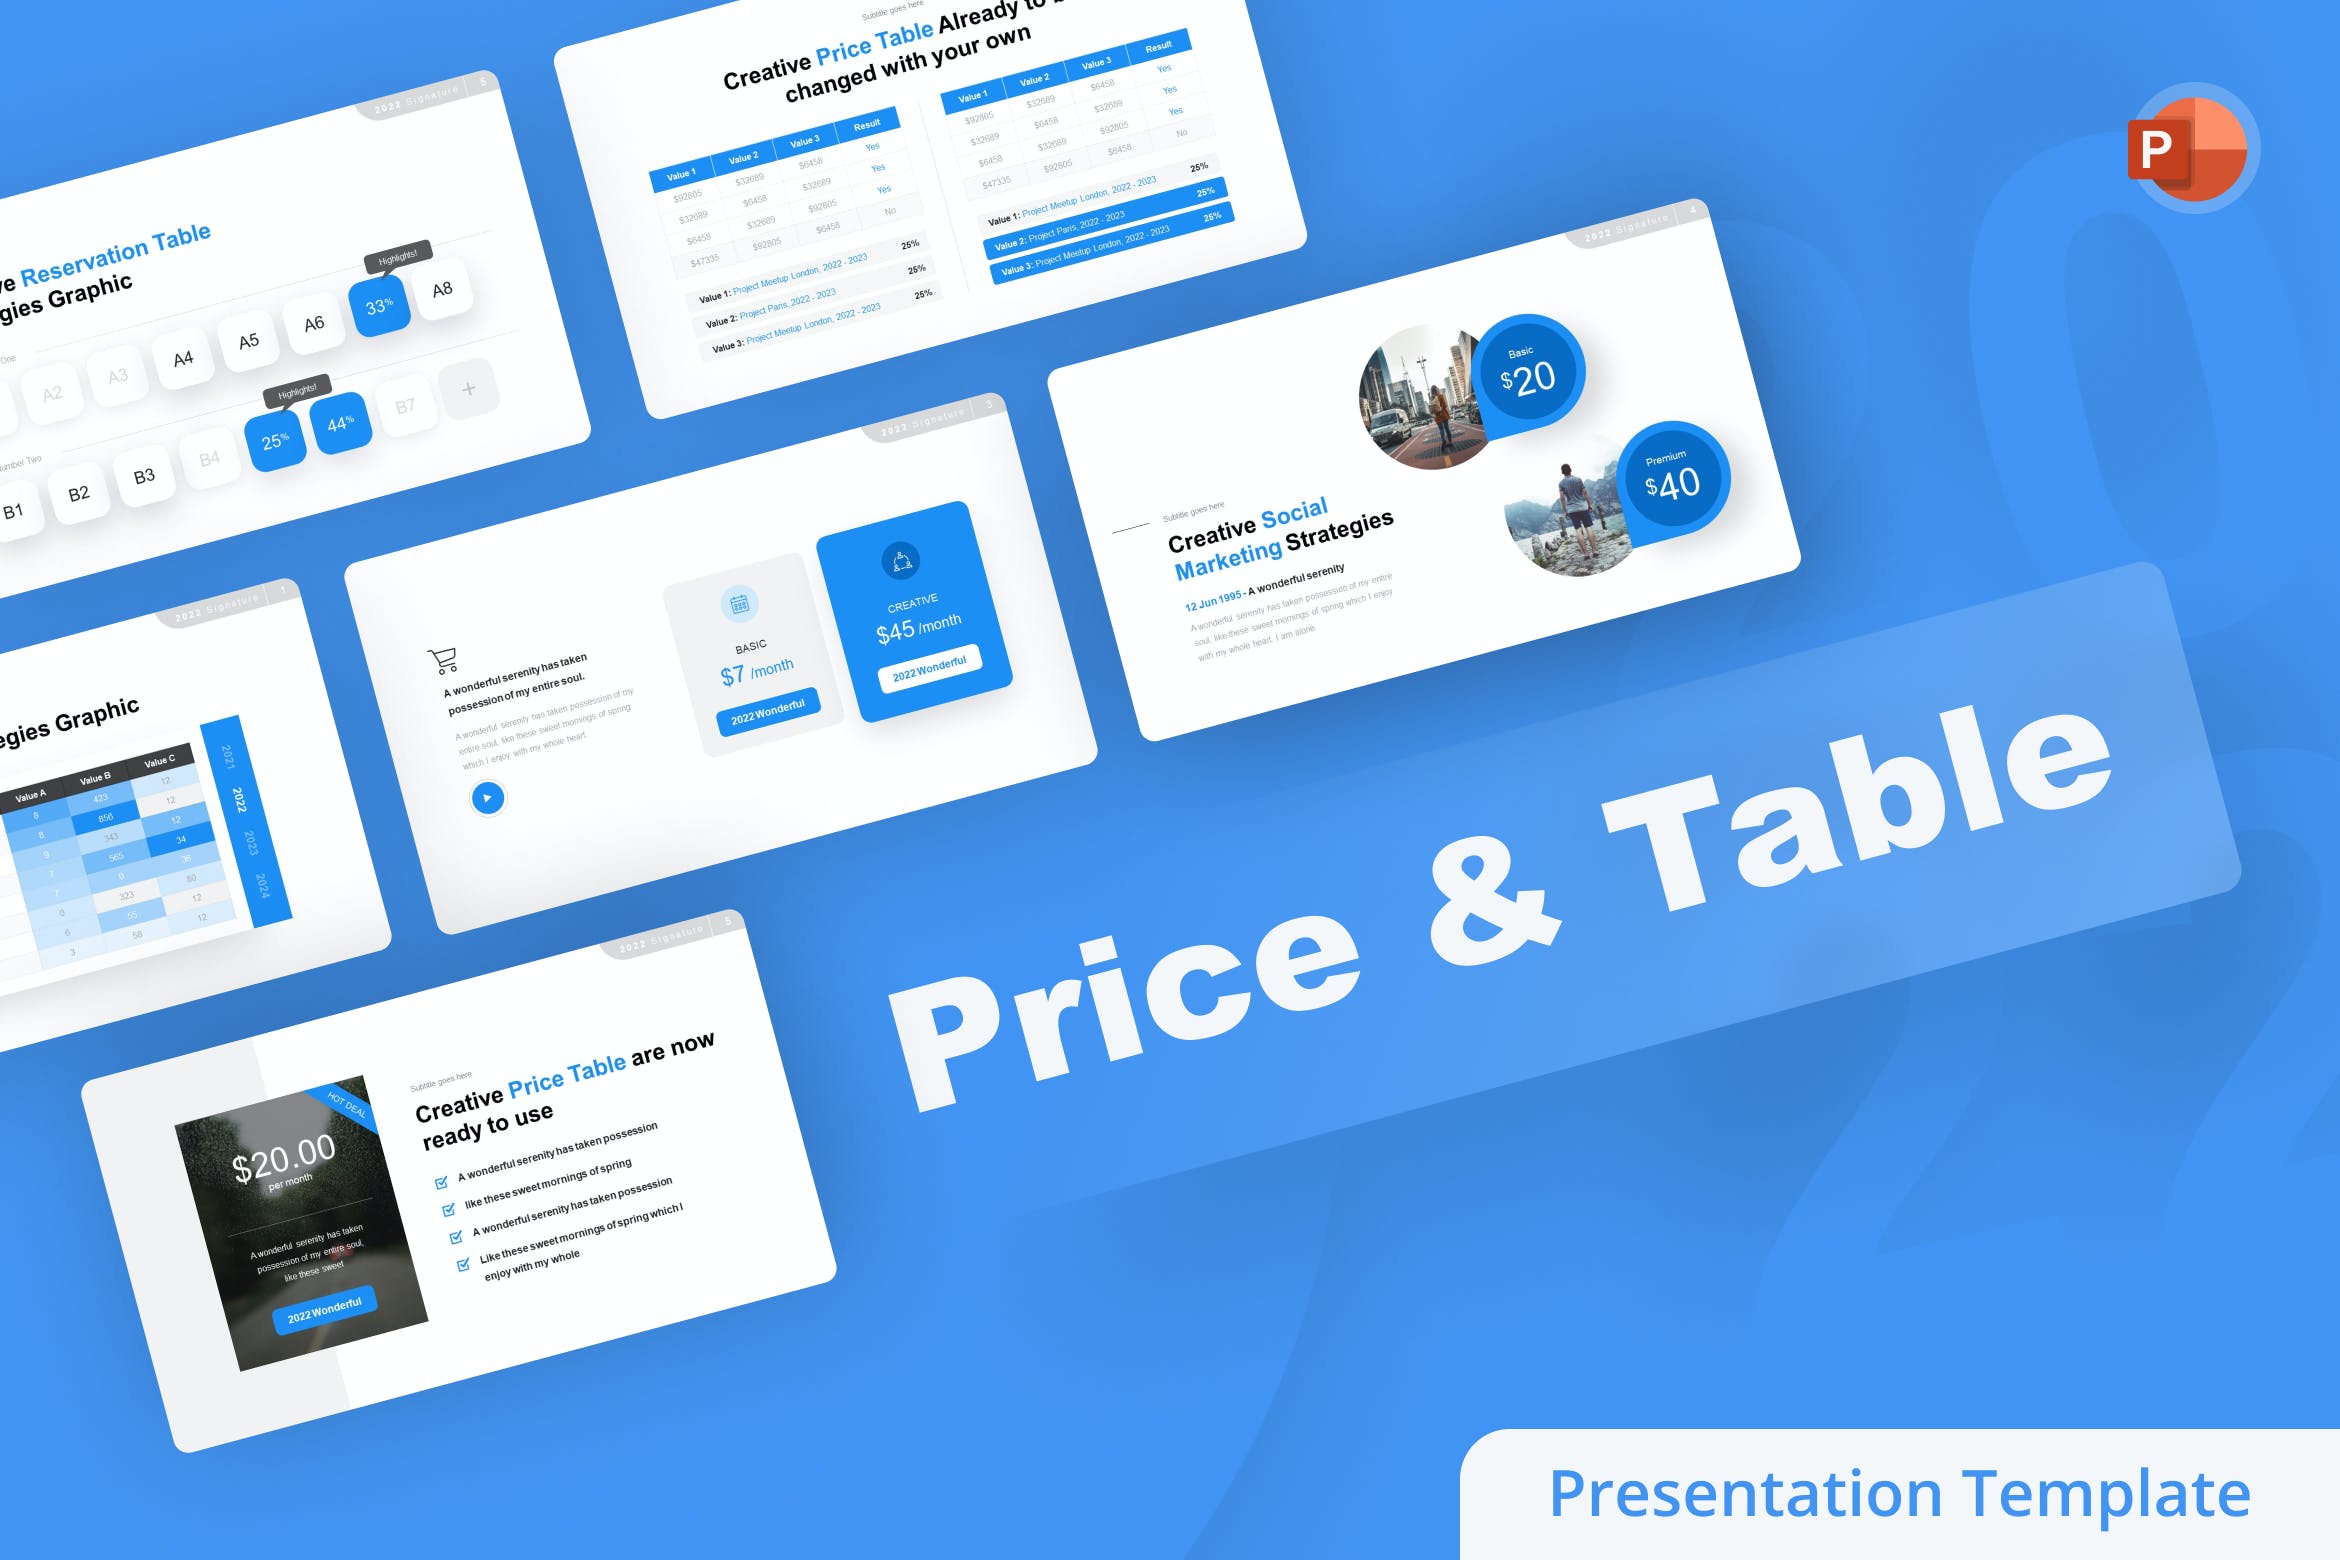 套餐价格表单PowerPoint演示模板 Price & Table PowerPoint Template 幻灯图表 第1张